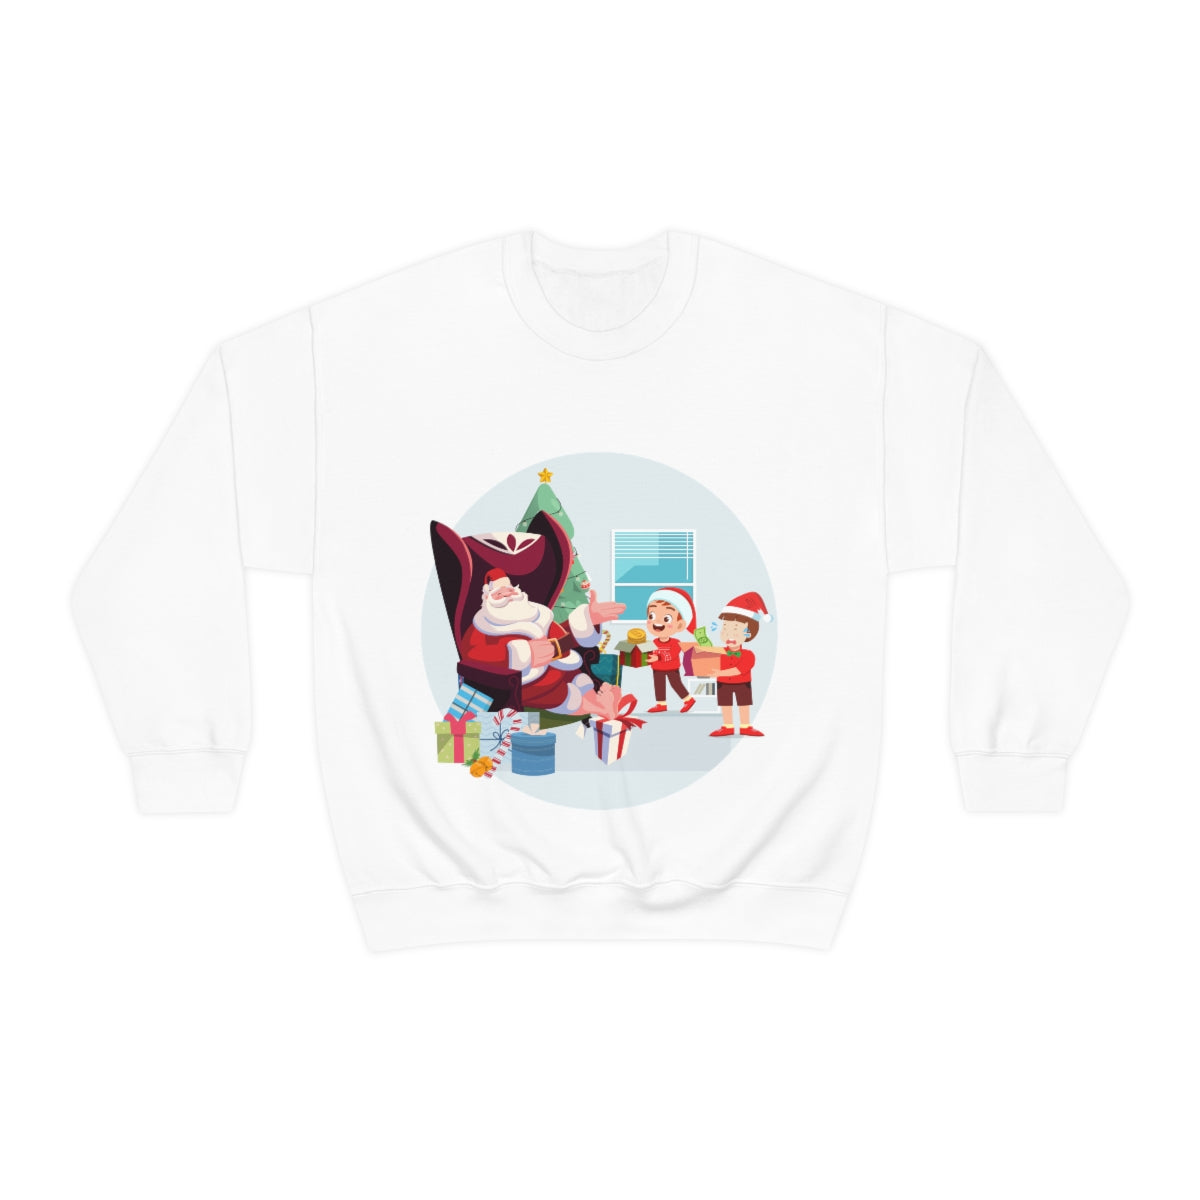 Naughty or Nice Christmas Sweatshirt